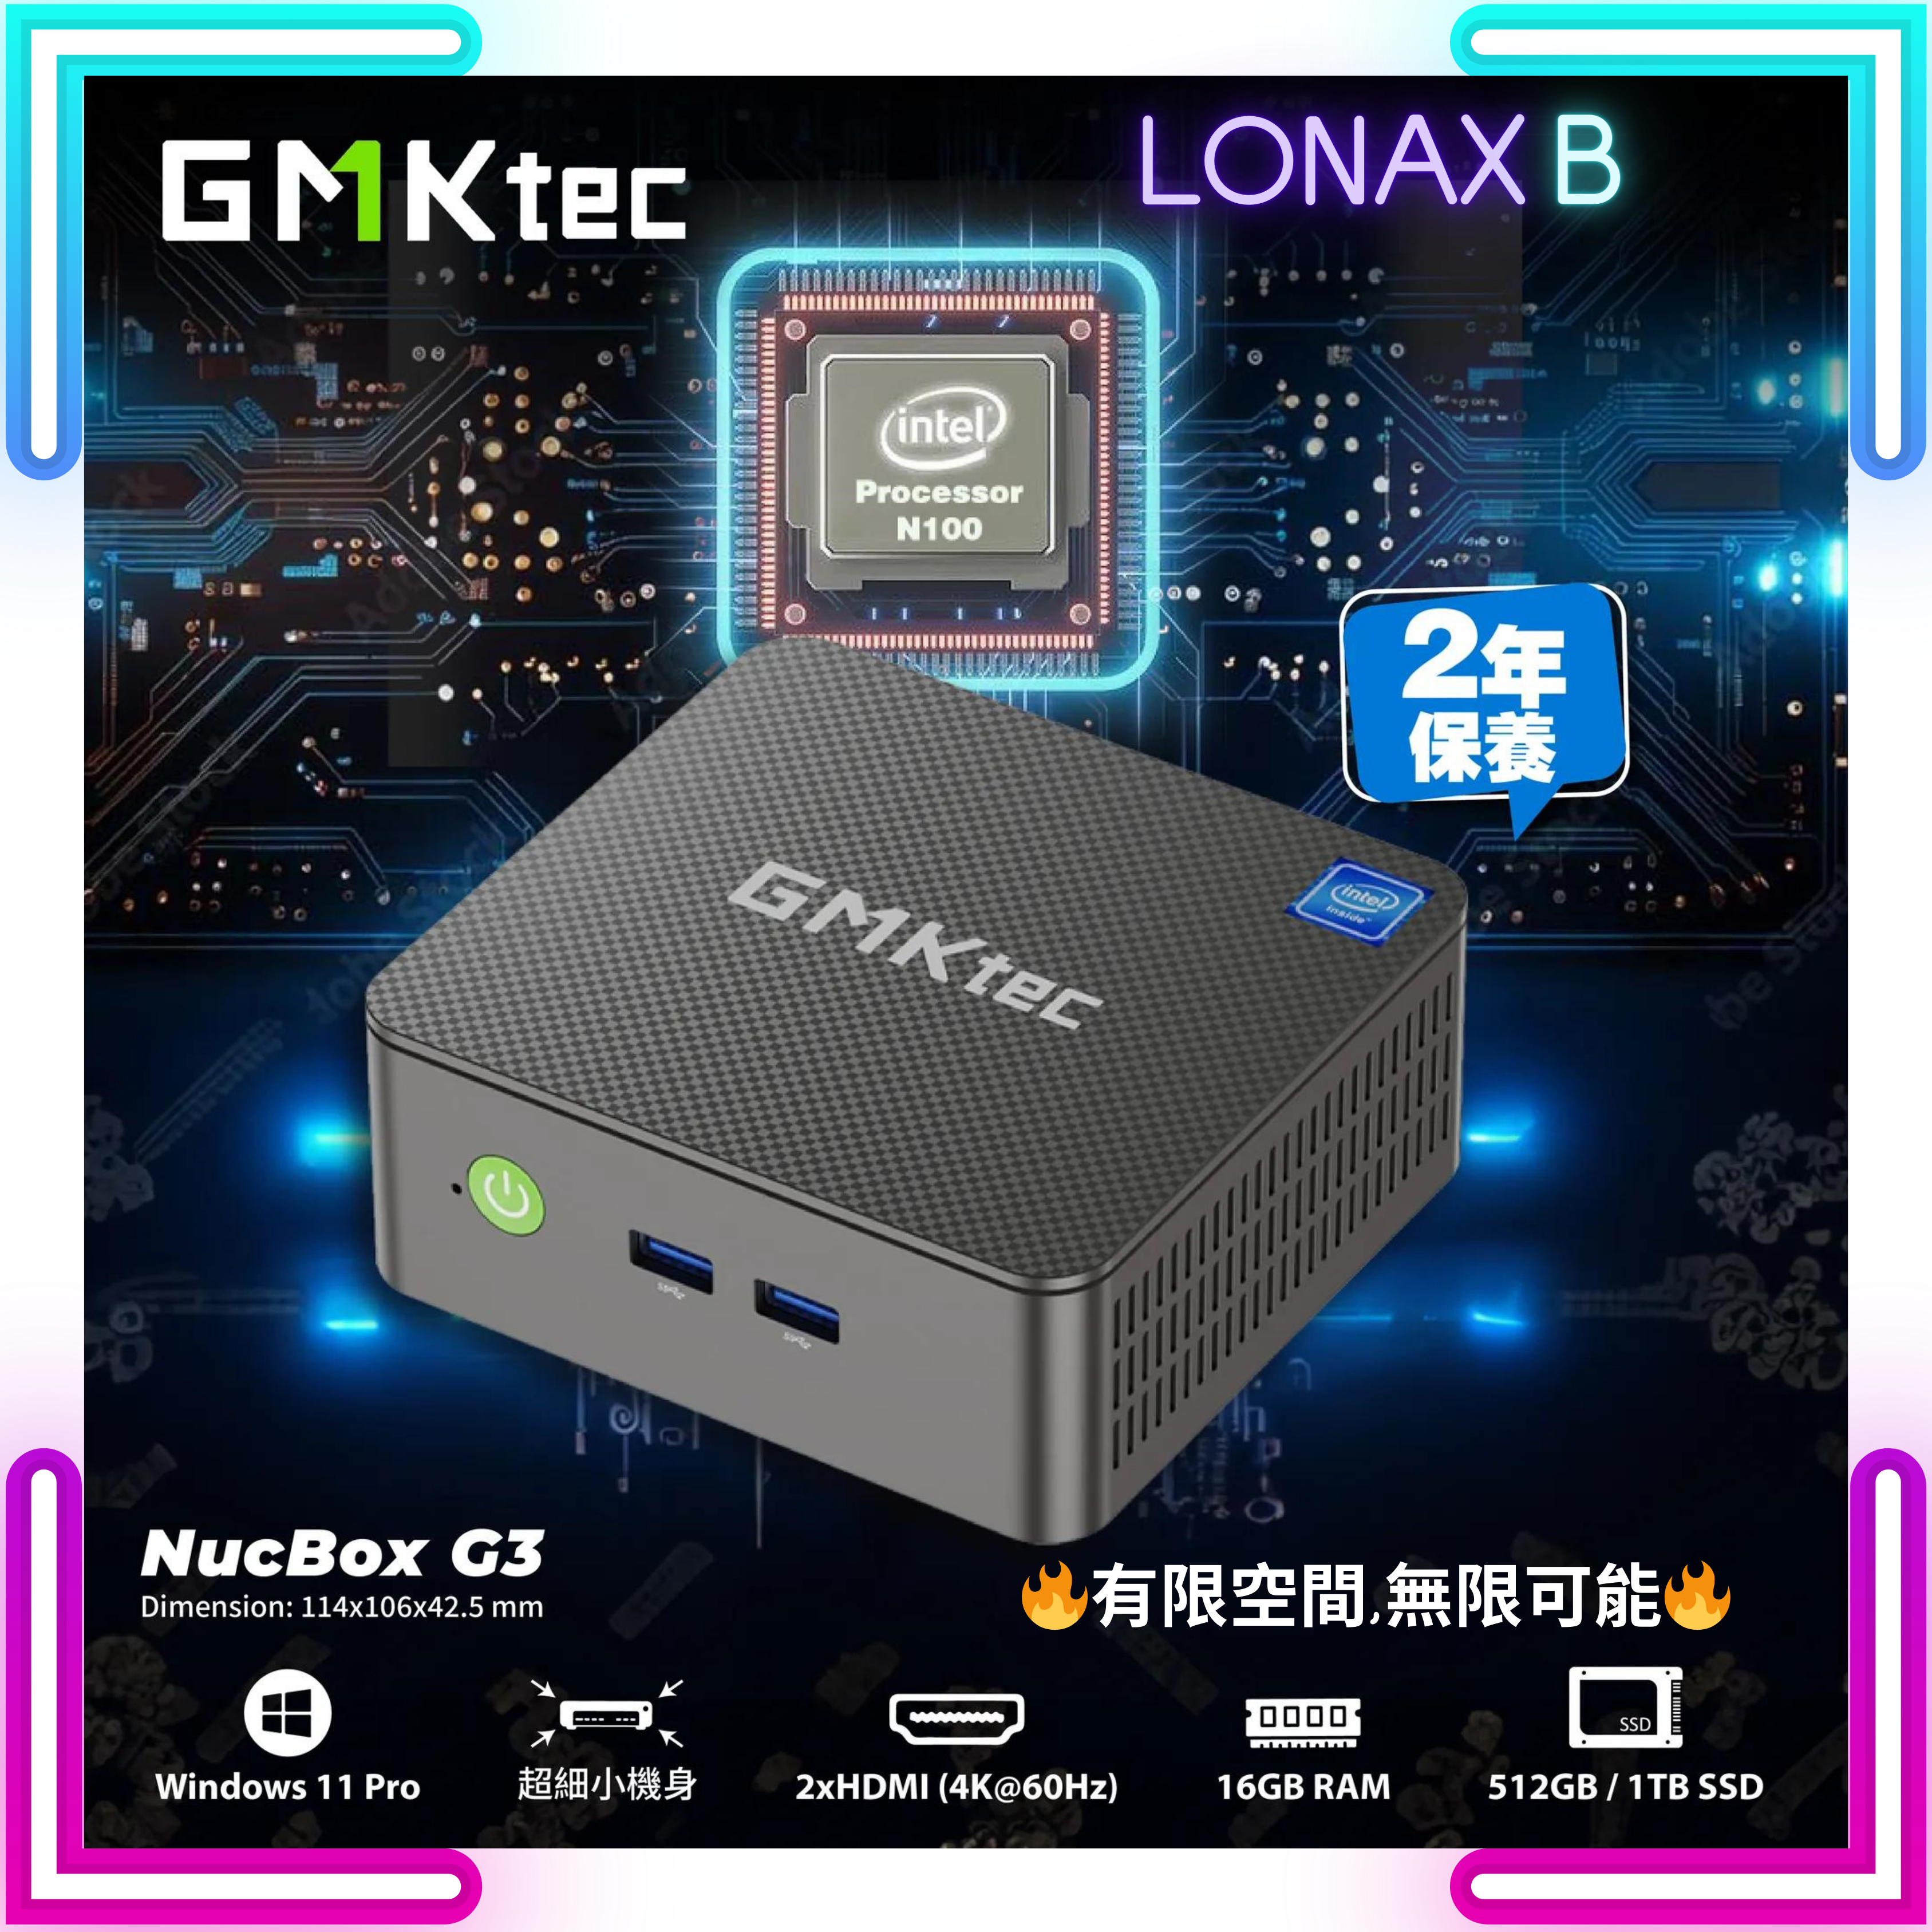 GMKtec NucBox G3 Mini PC Intel Alder Lake N100 | 16GB RAM | 1TB SSD | Window 11 Pro